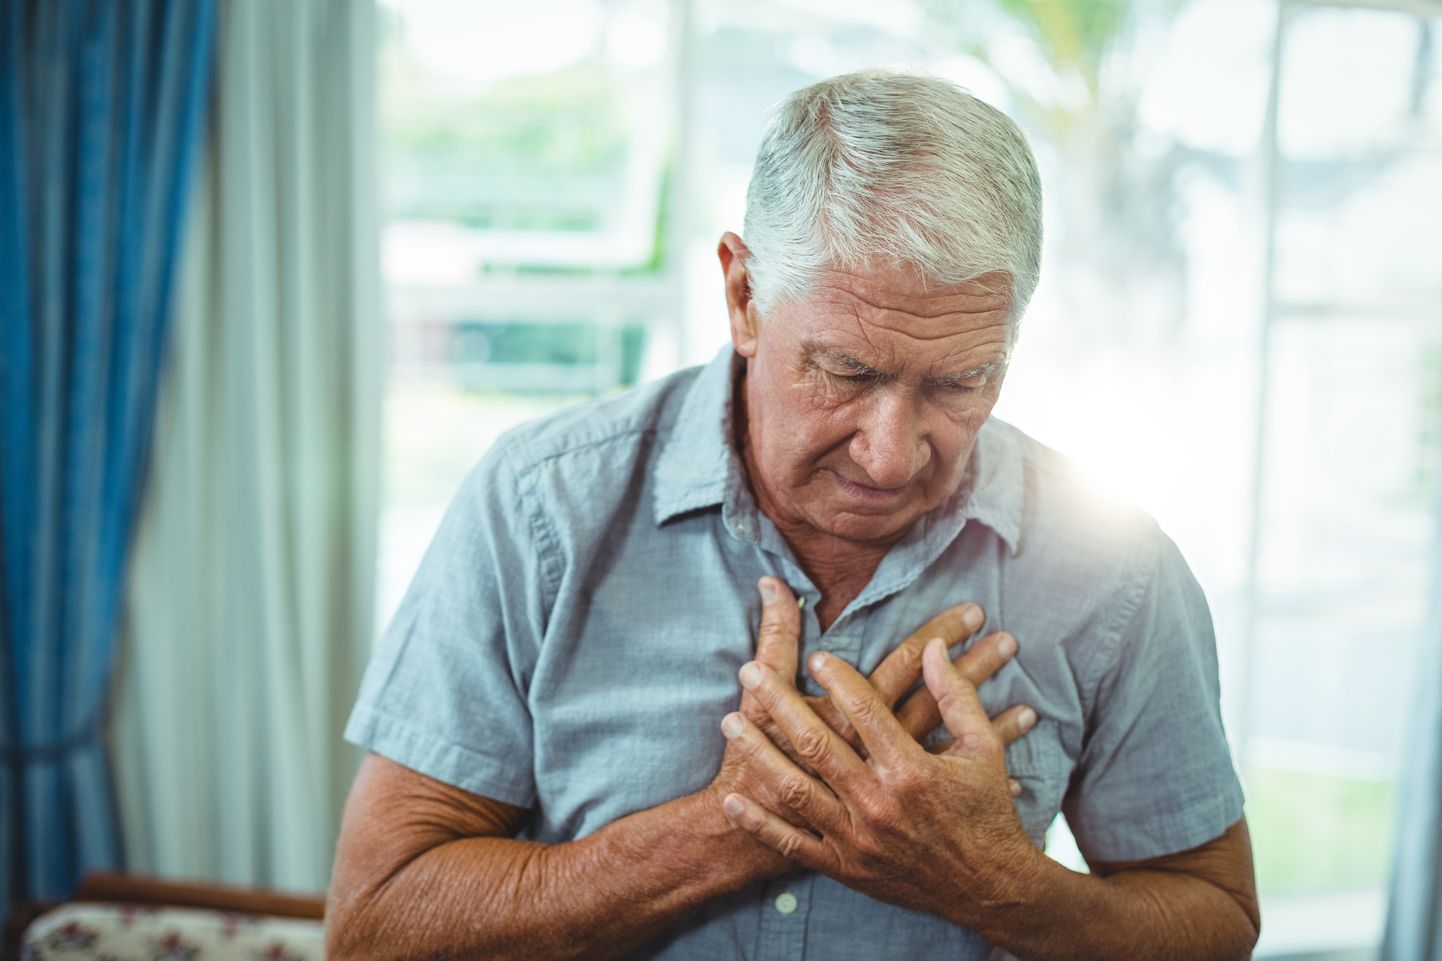 Kui südamepekslemisega esineb ebameeldiv tunne või valu rinnus, tuleks pöörduda EMO-sse või kutsuda kiirabi.